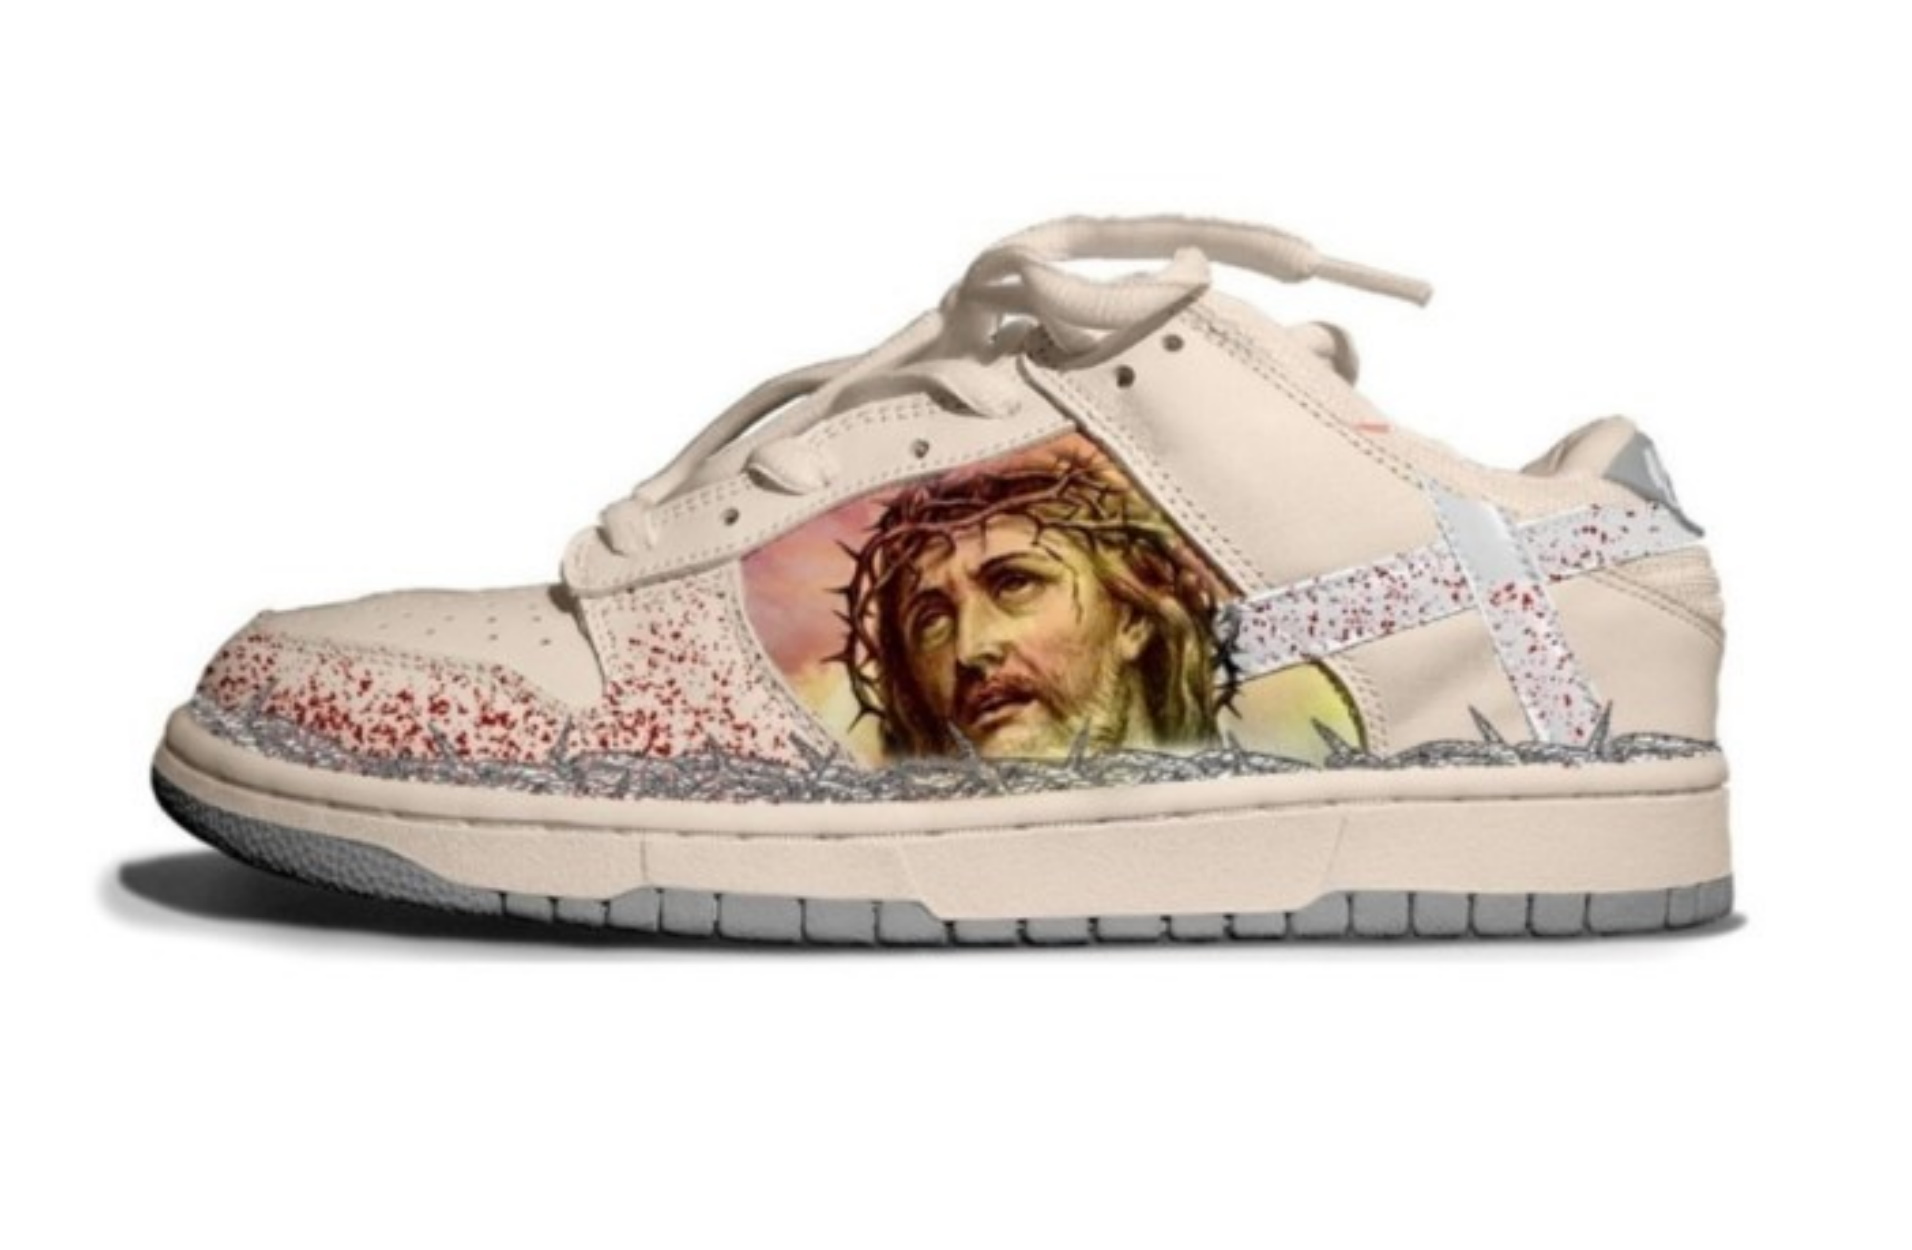 Το είδαμε και αυτό! Ένα sneaker με έμπνευση τα “Πάθη του Χριστού”!